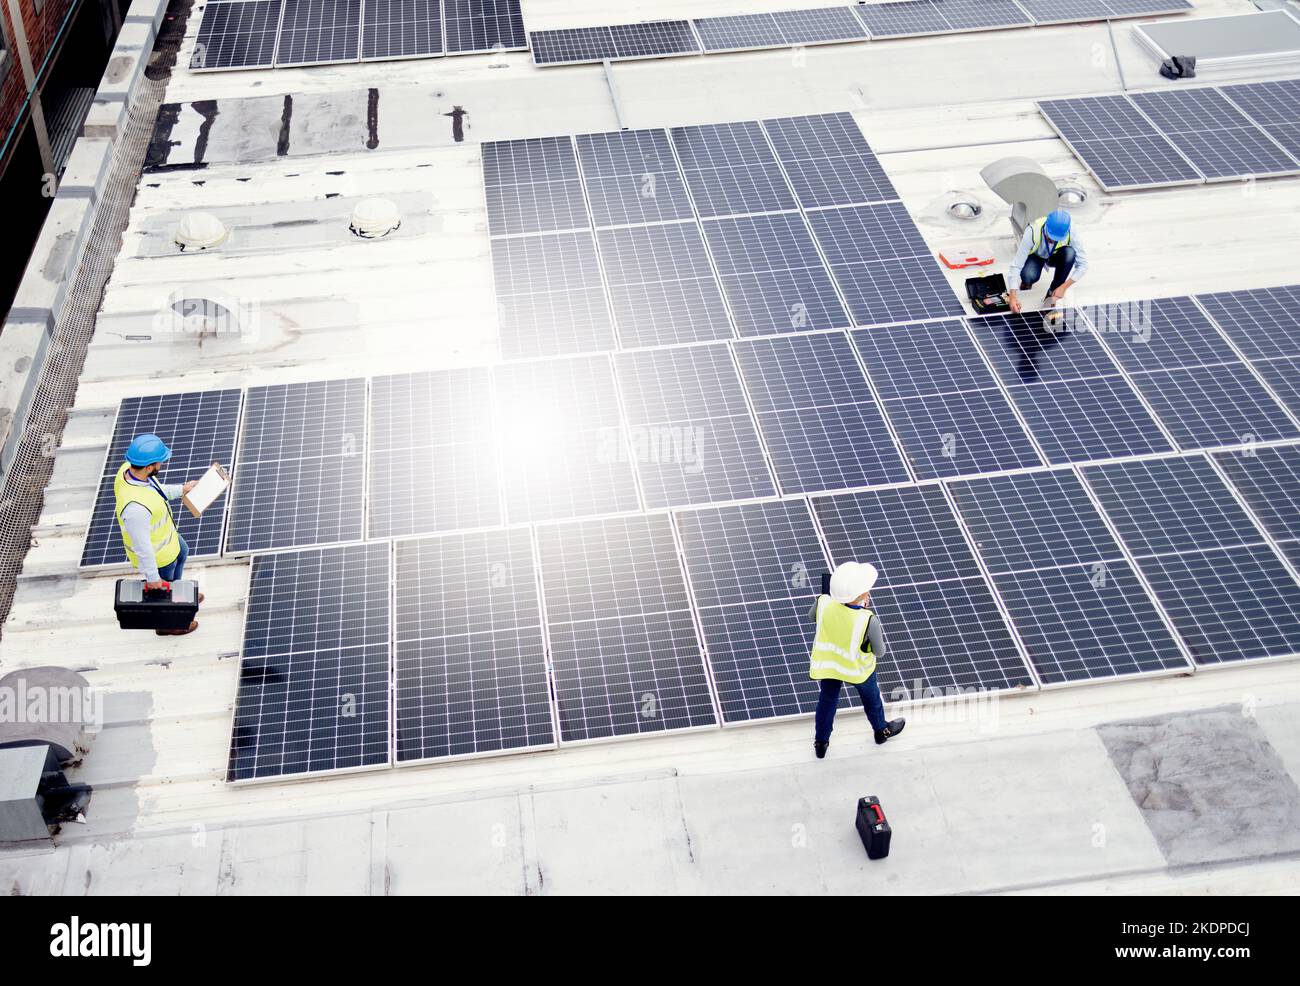 Solarenergie, Bau und Mitarbeiter bauen Solarmodule in Zusammenarbeit für Nachhaltigkeit, Wartung und Engineering. Teamarbeit Stockfoto